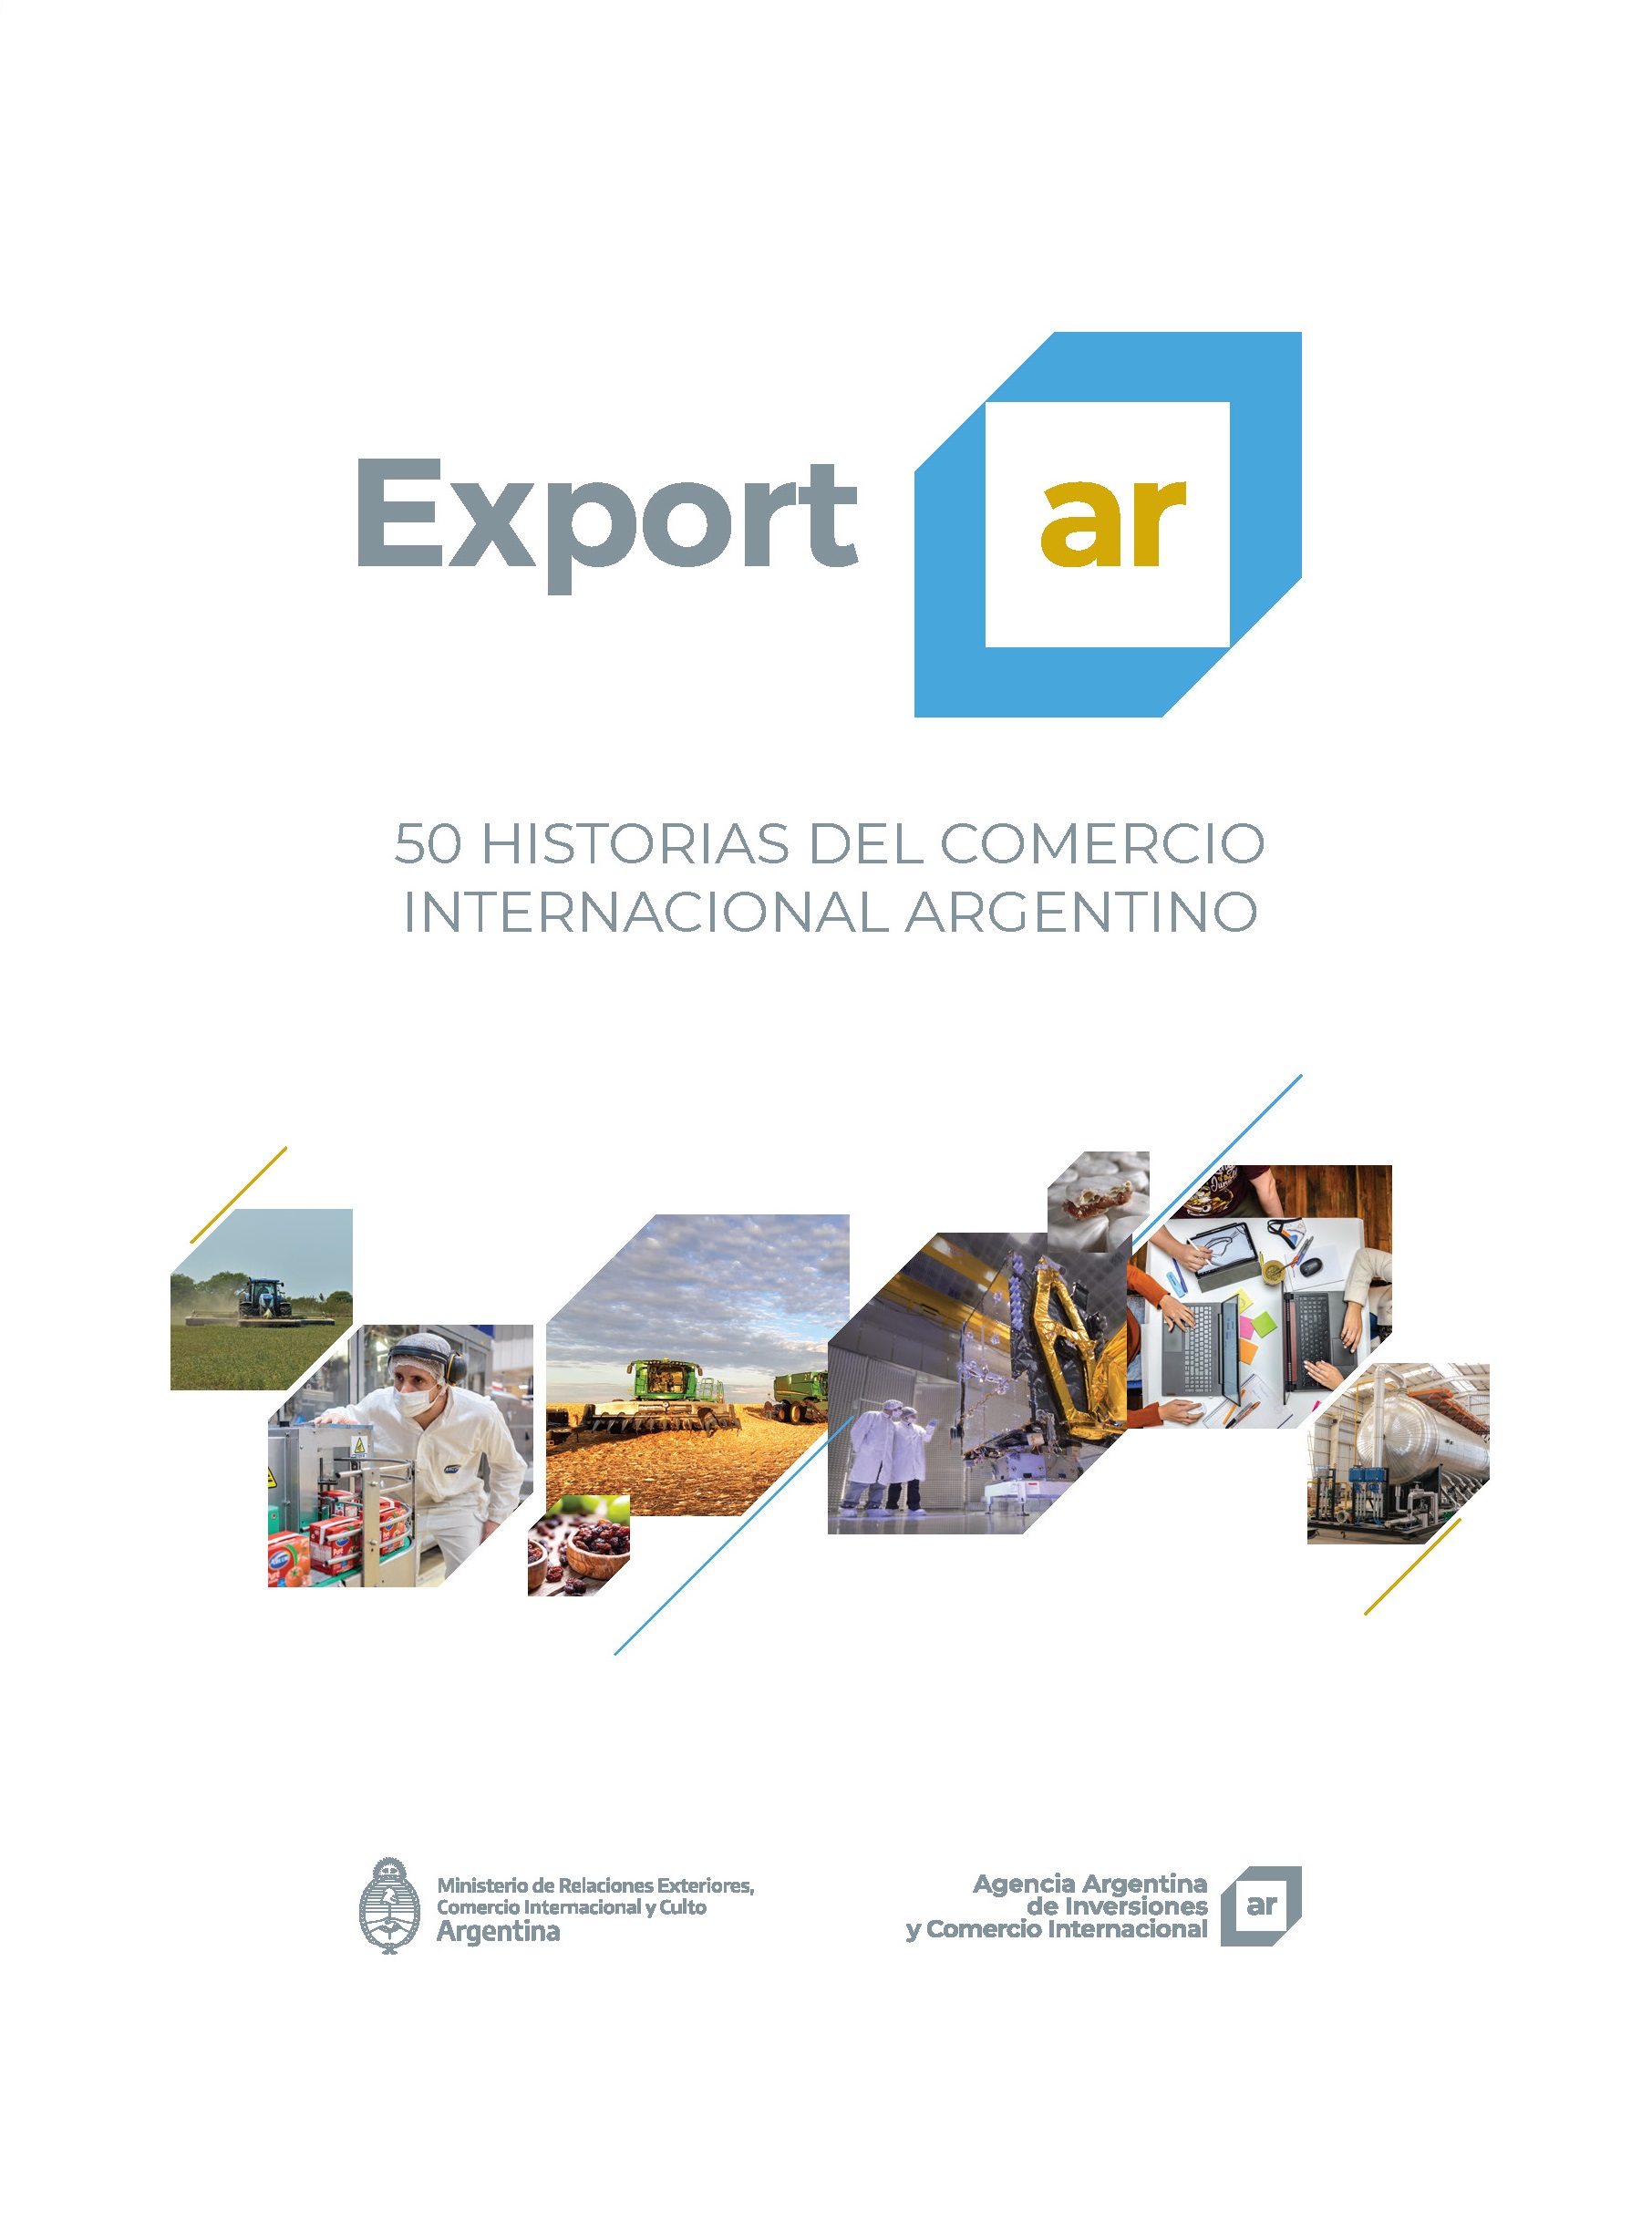 https://www.exportar.org.ar/images/publicaciones/Exportar. 50 historias del comercio internacional argentino